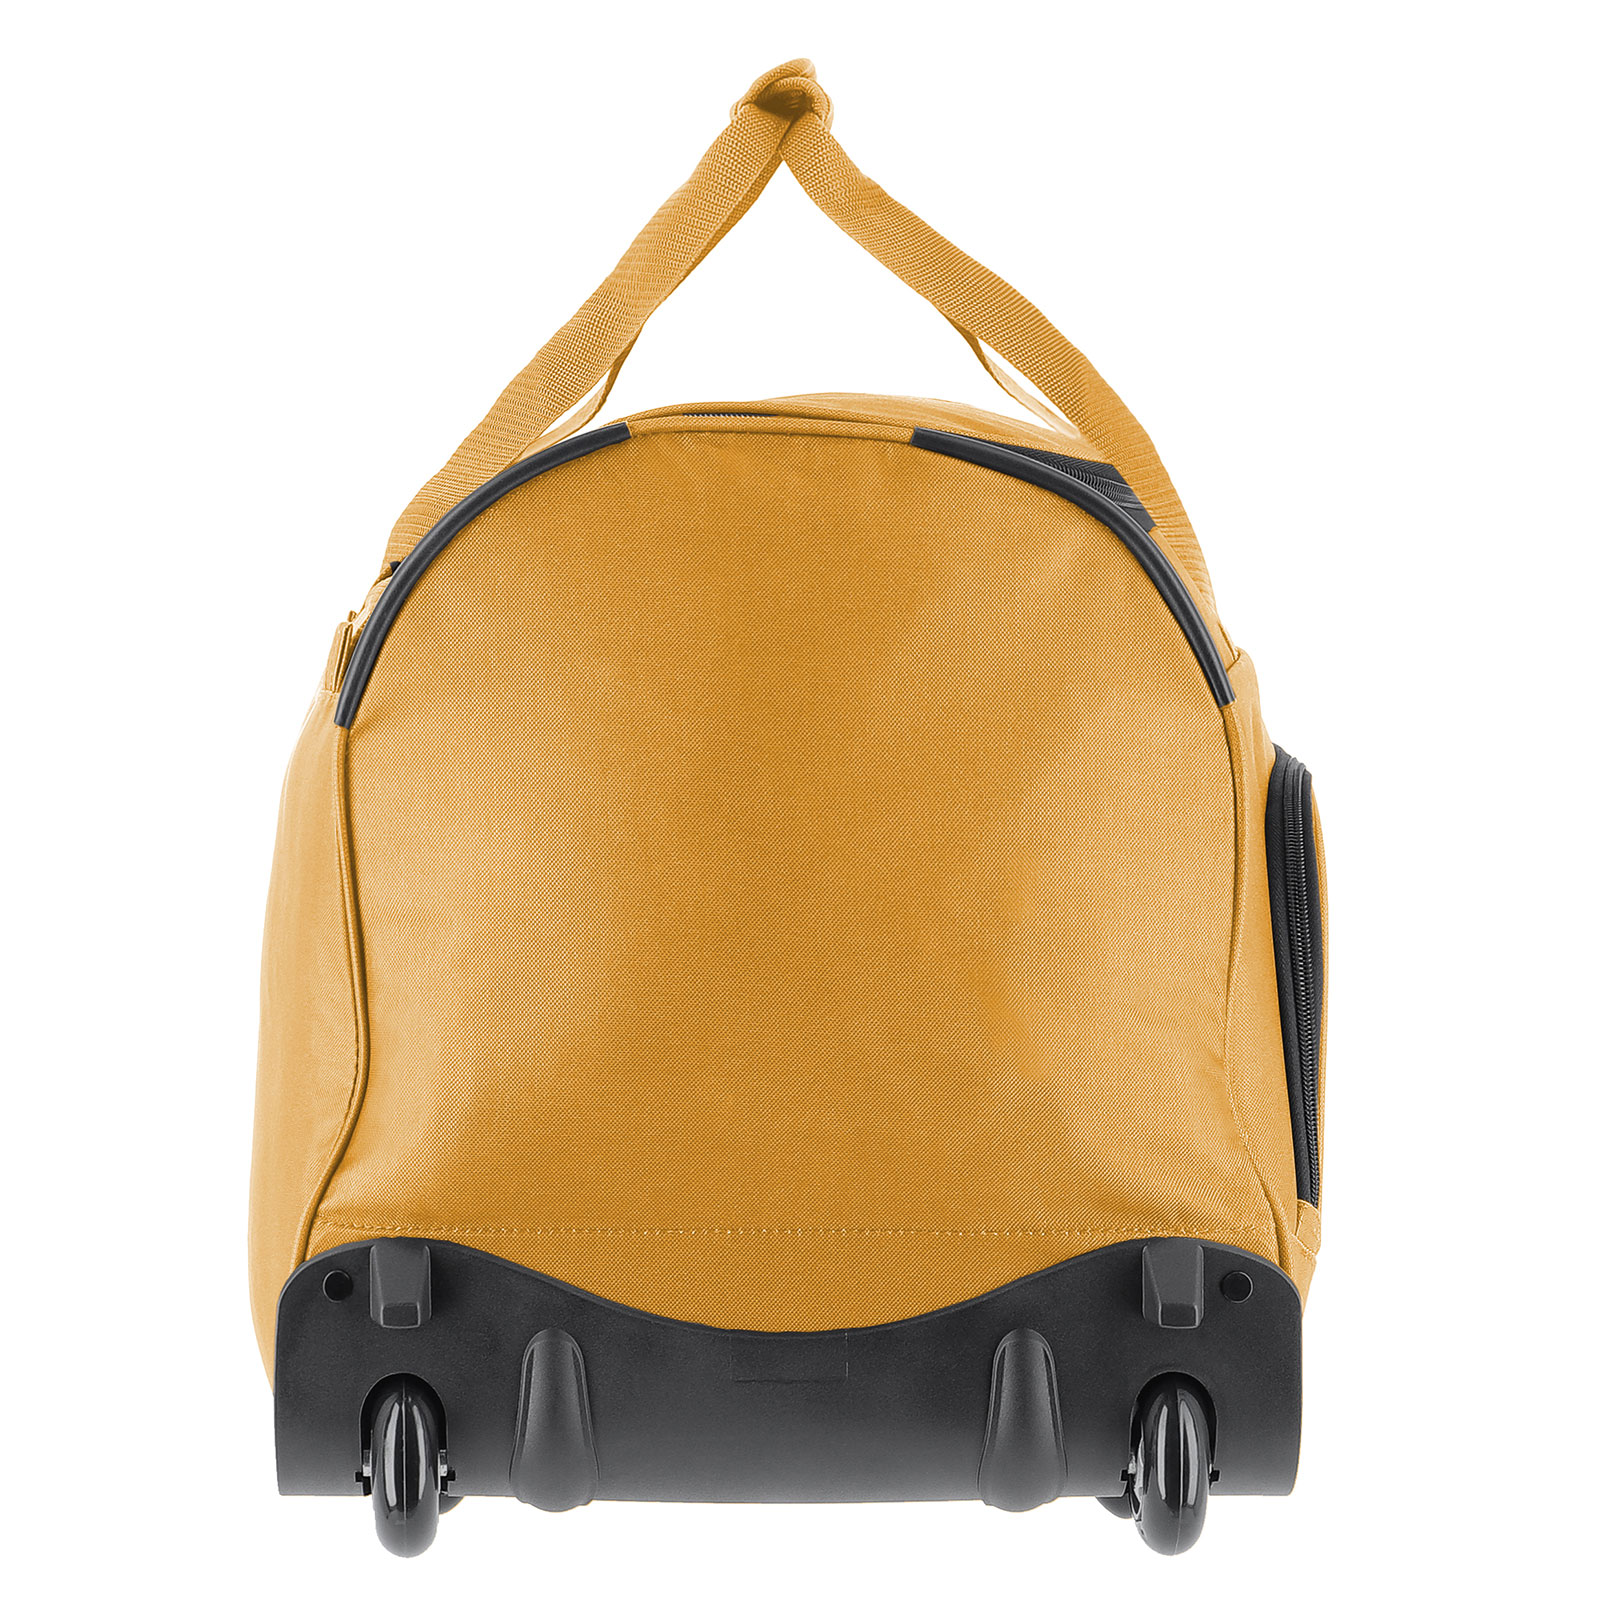 Hervorragende Qualität travelite Basics Fresh Trolley Reisetasche günstig cm 2 | Koffermarkt kaufen: 70 Rollen